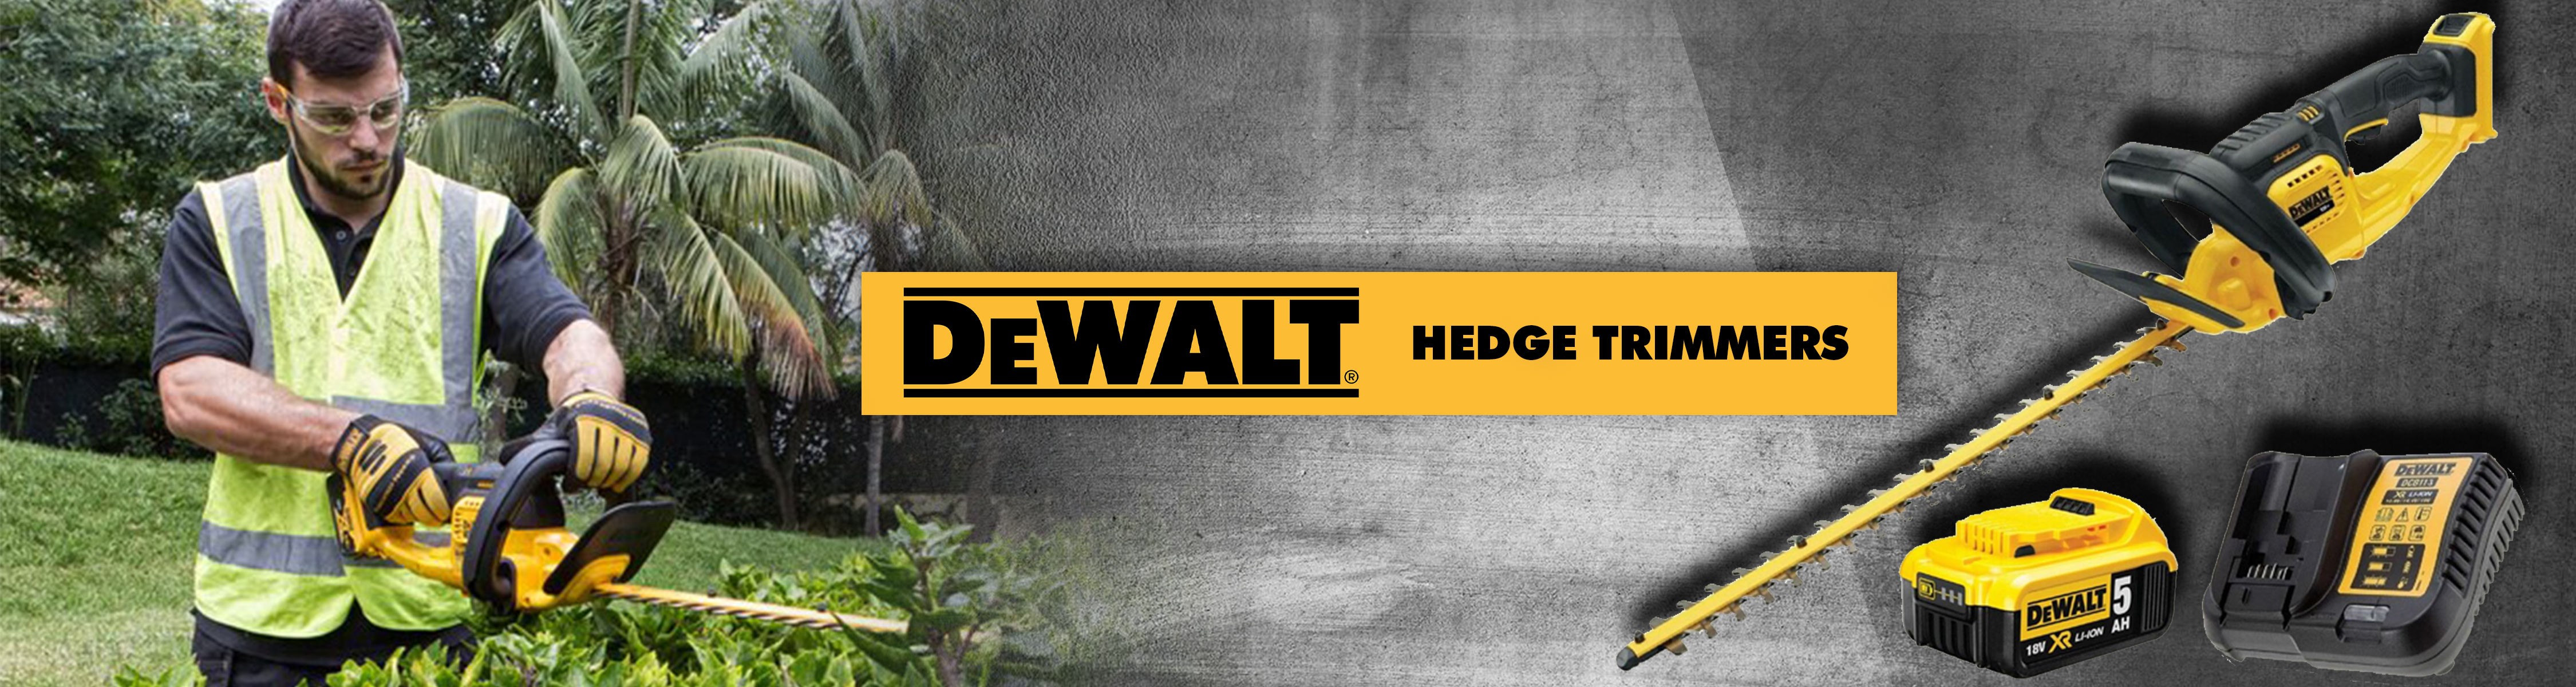 DeWalt Hedge Trimmers